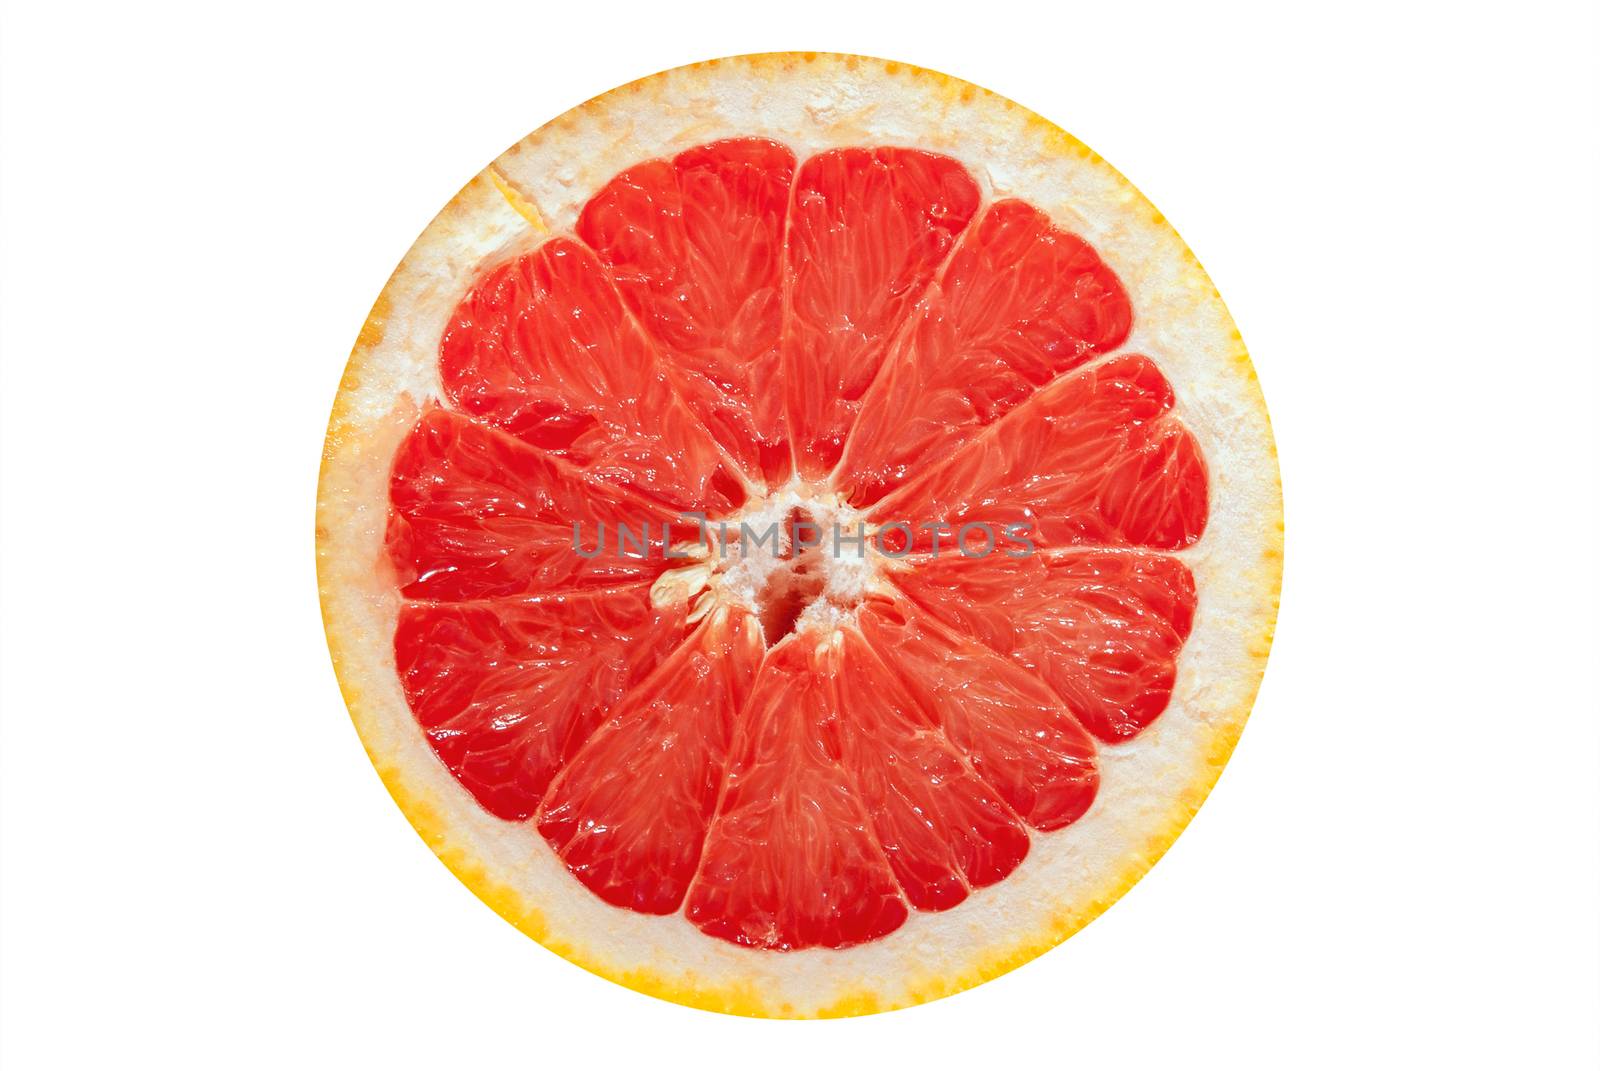 Slice grapefruit by negativ